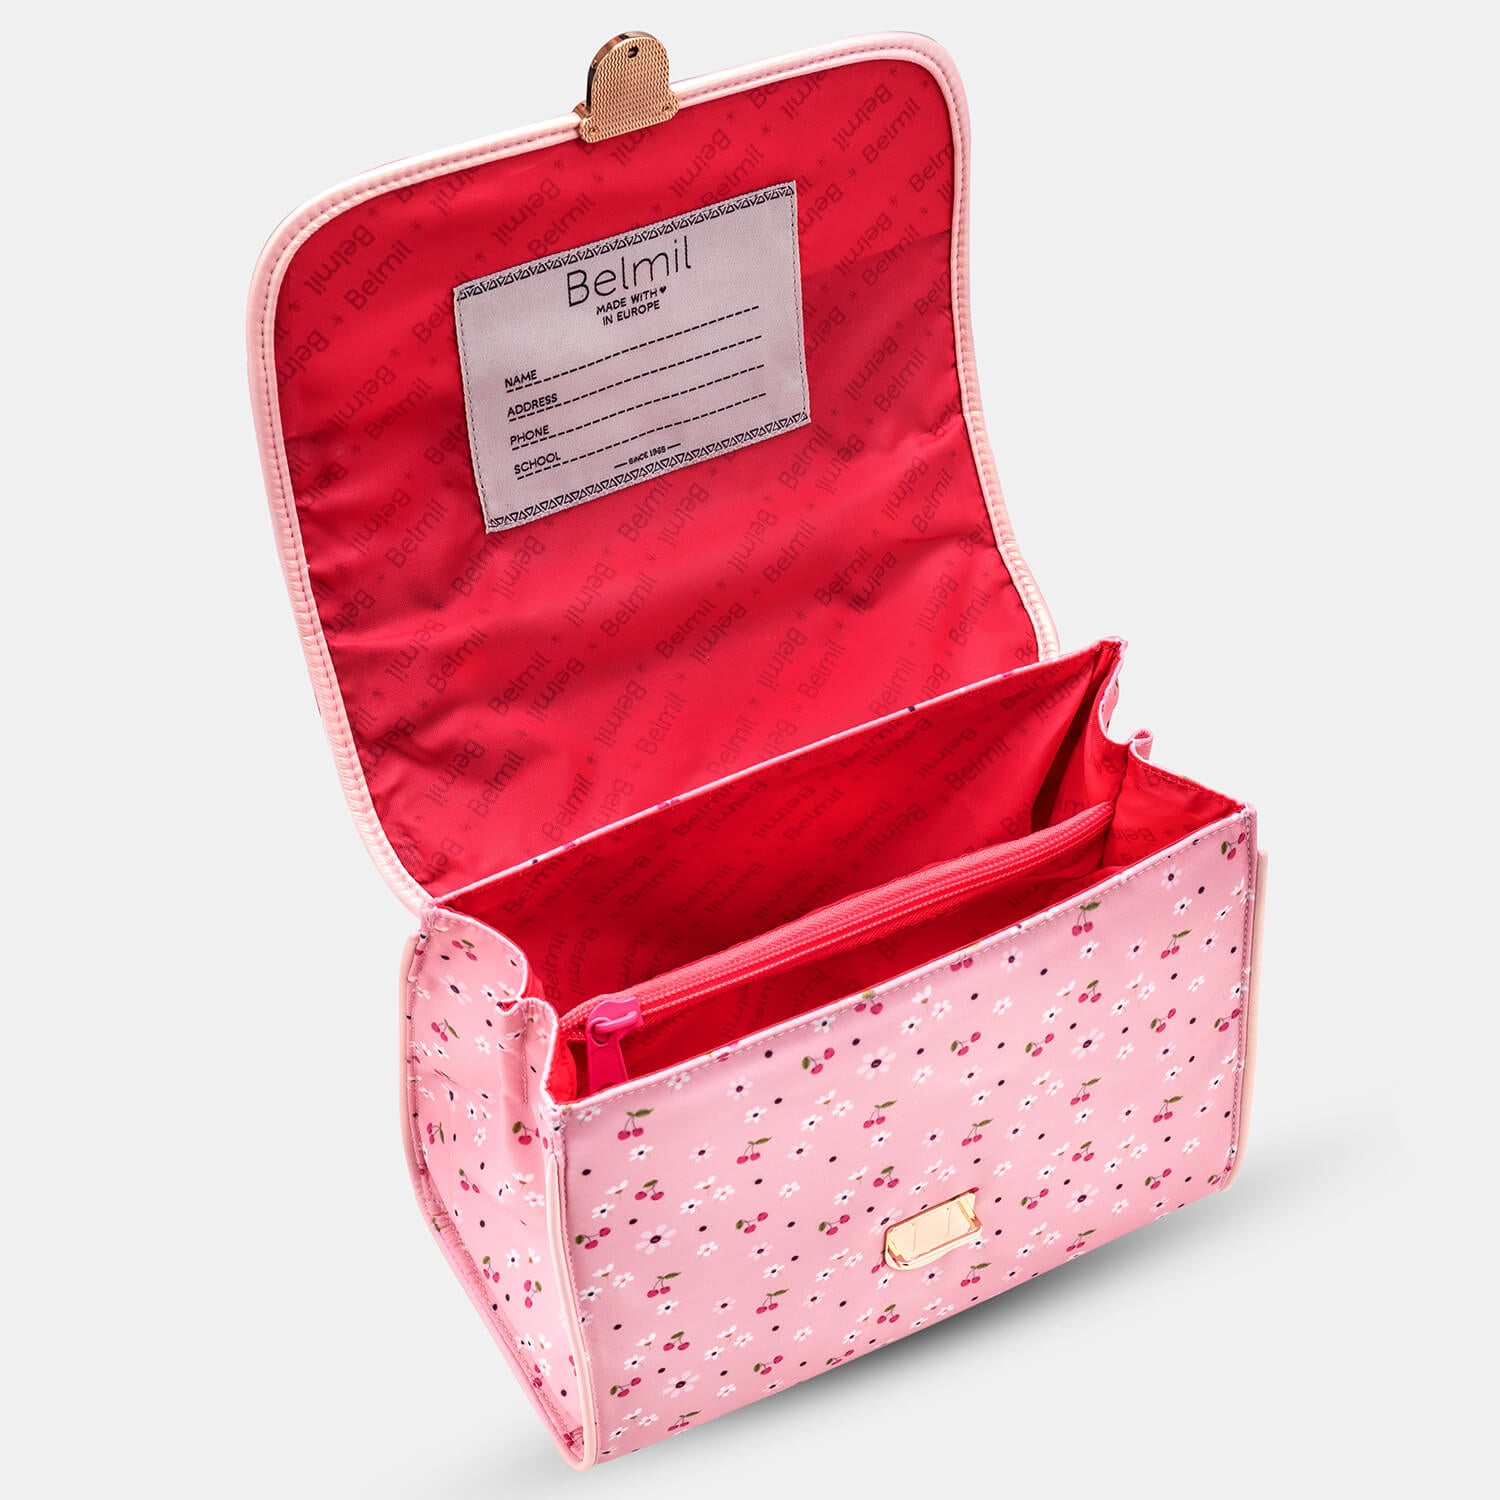 Petite Premium Shoulder bag Cherry Blossom